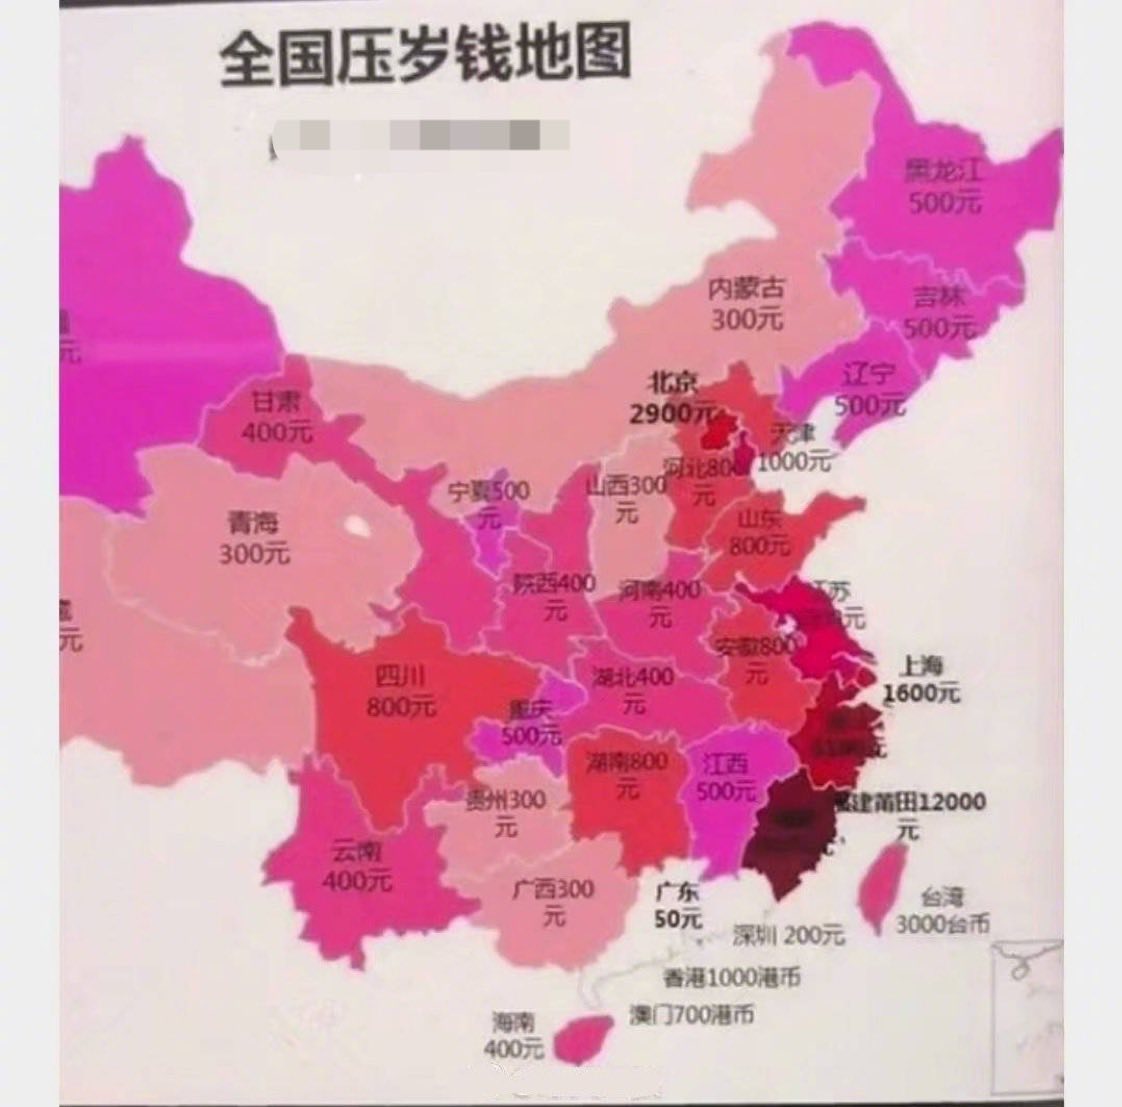 全国压岁钱地图,广东最低才50,真的假的?